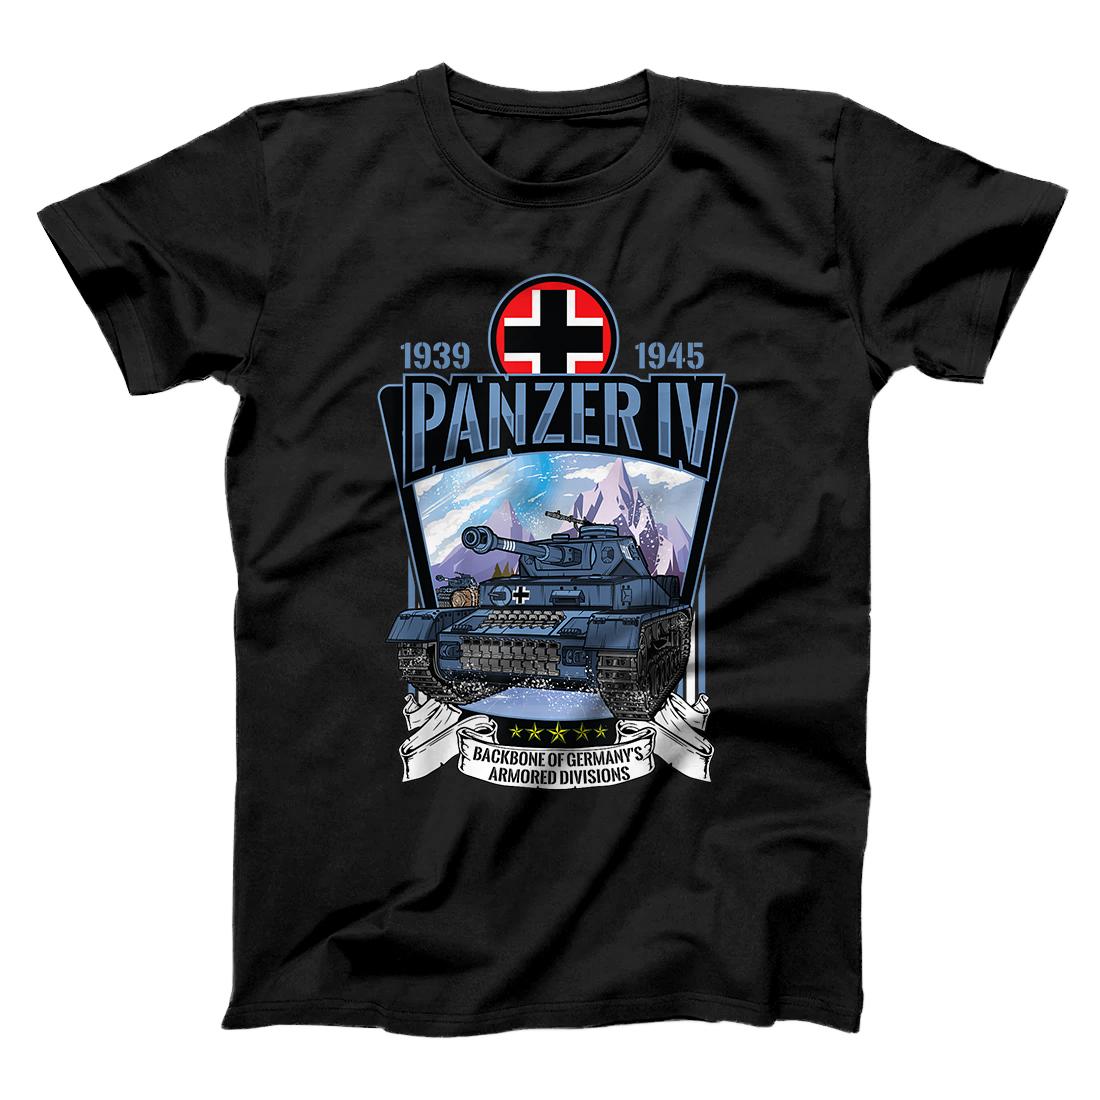 Vintage World War 2 German Tank Panzer IV gift T-Shirt